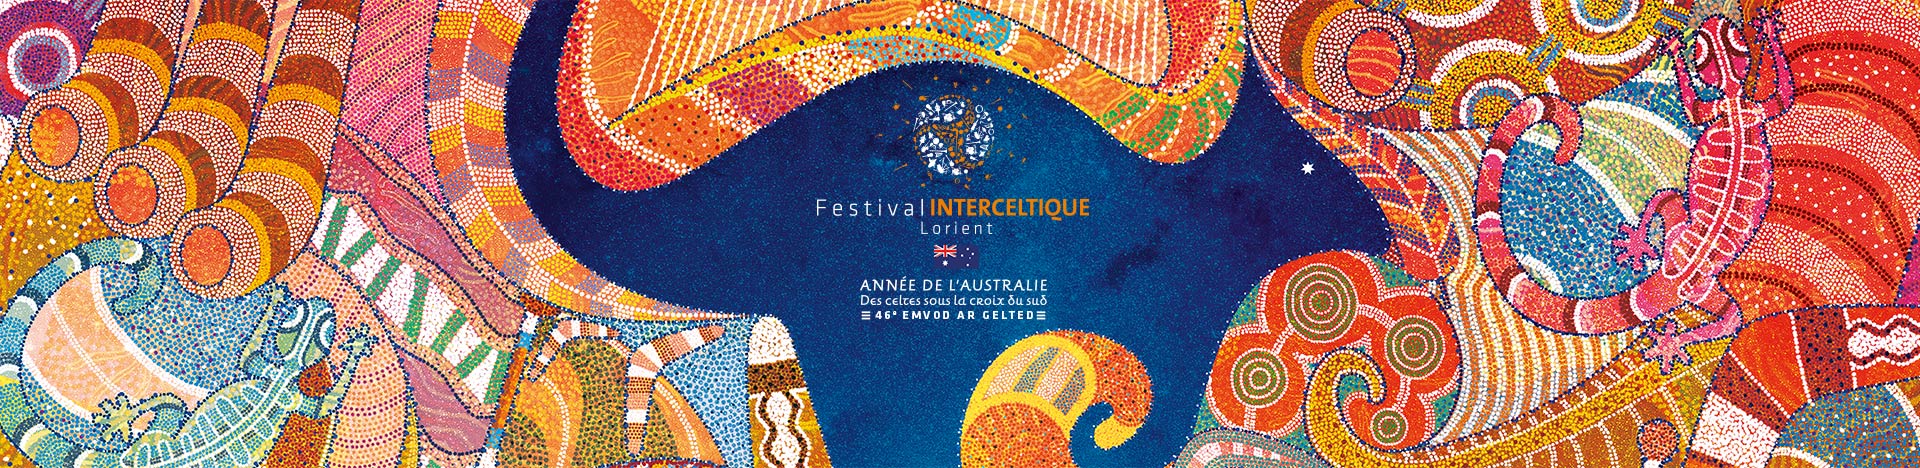 bandeau_festival_interceltique